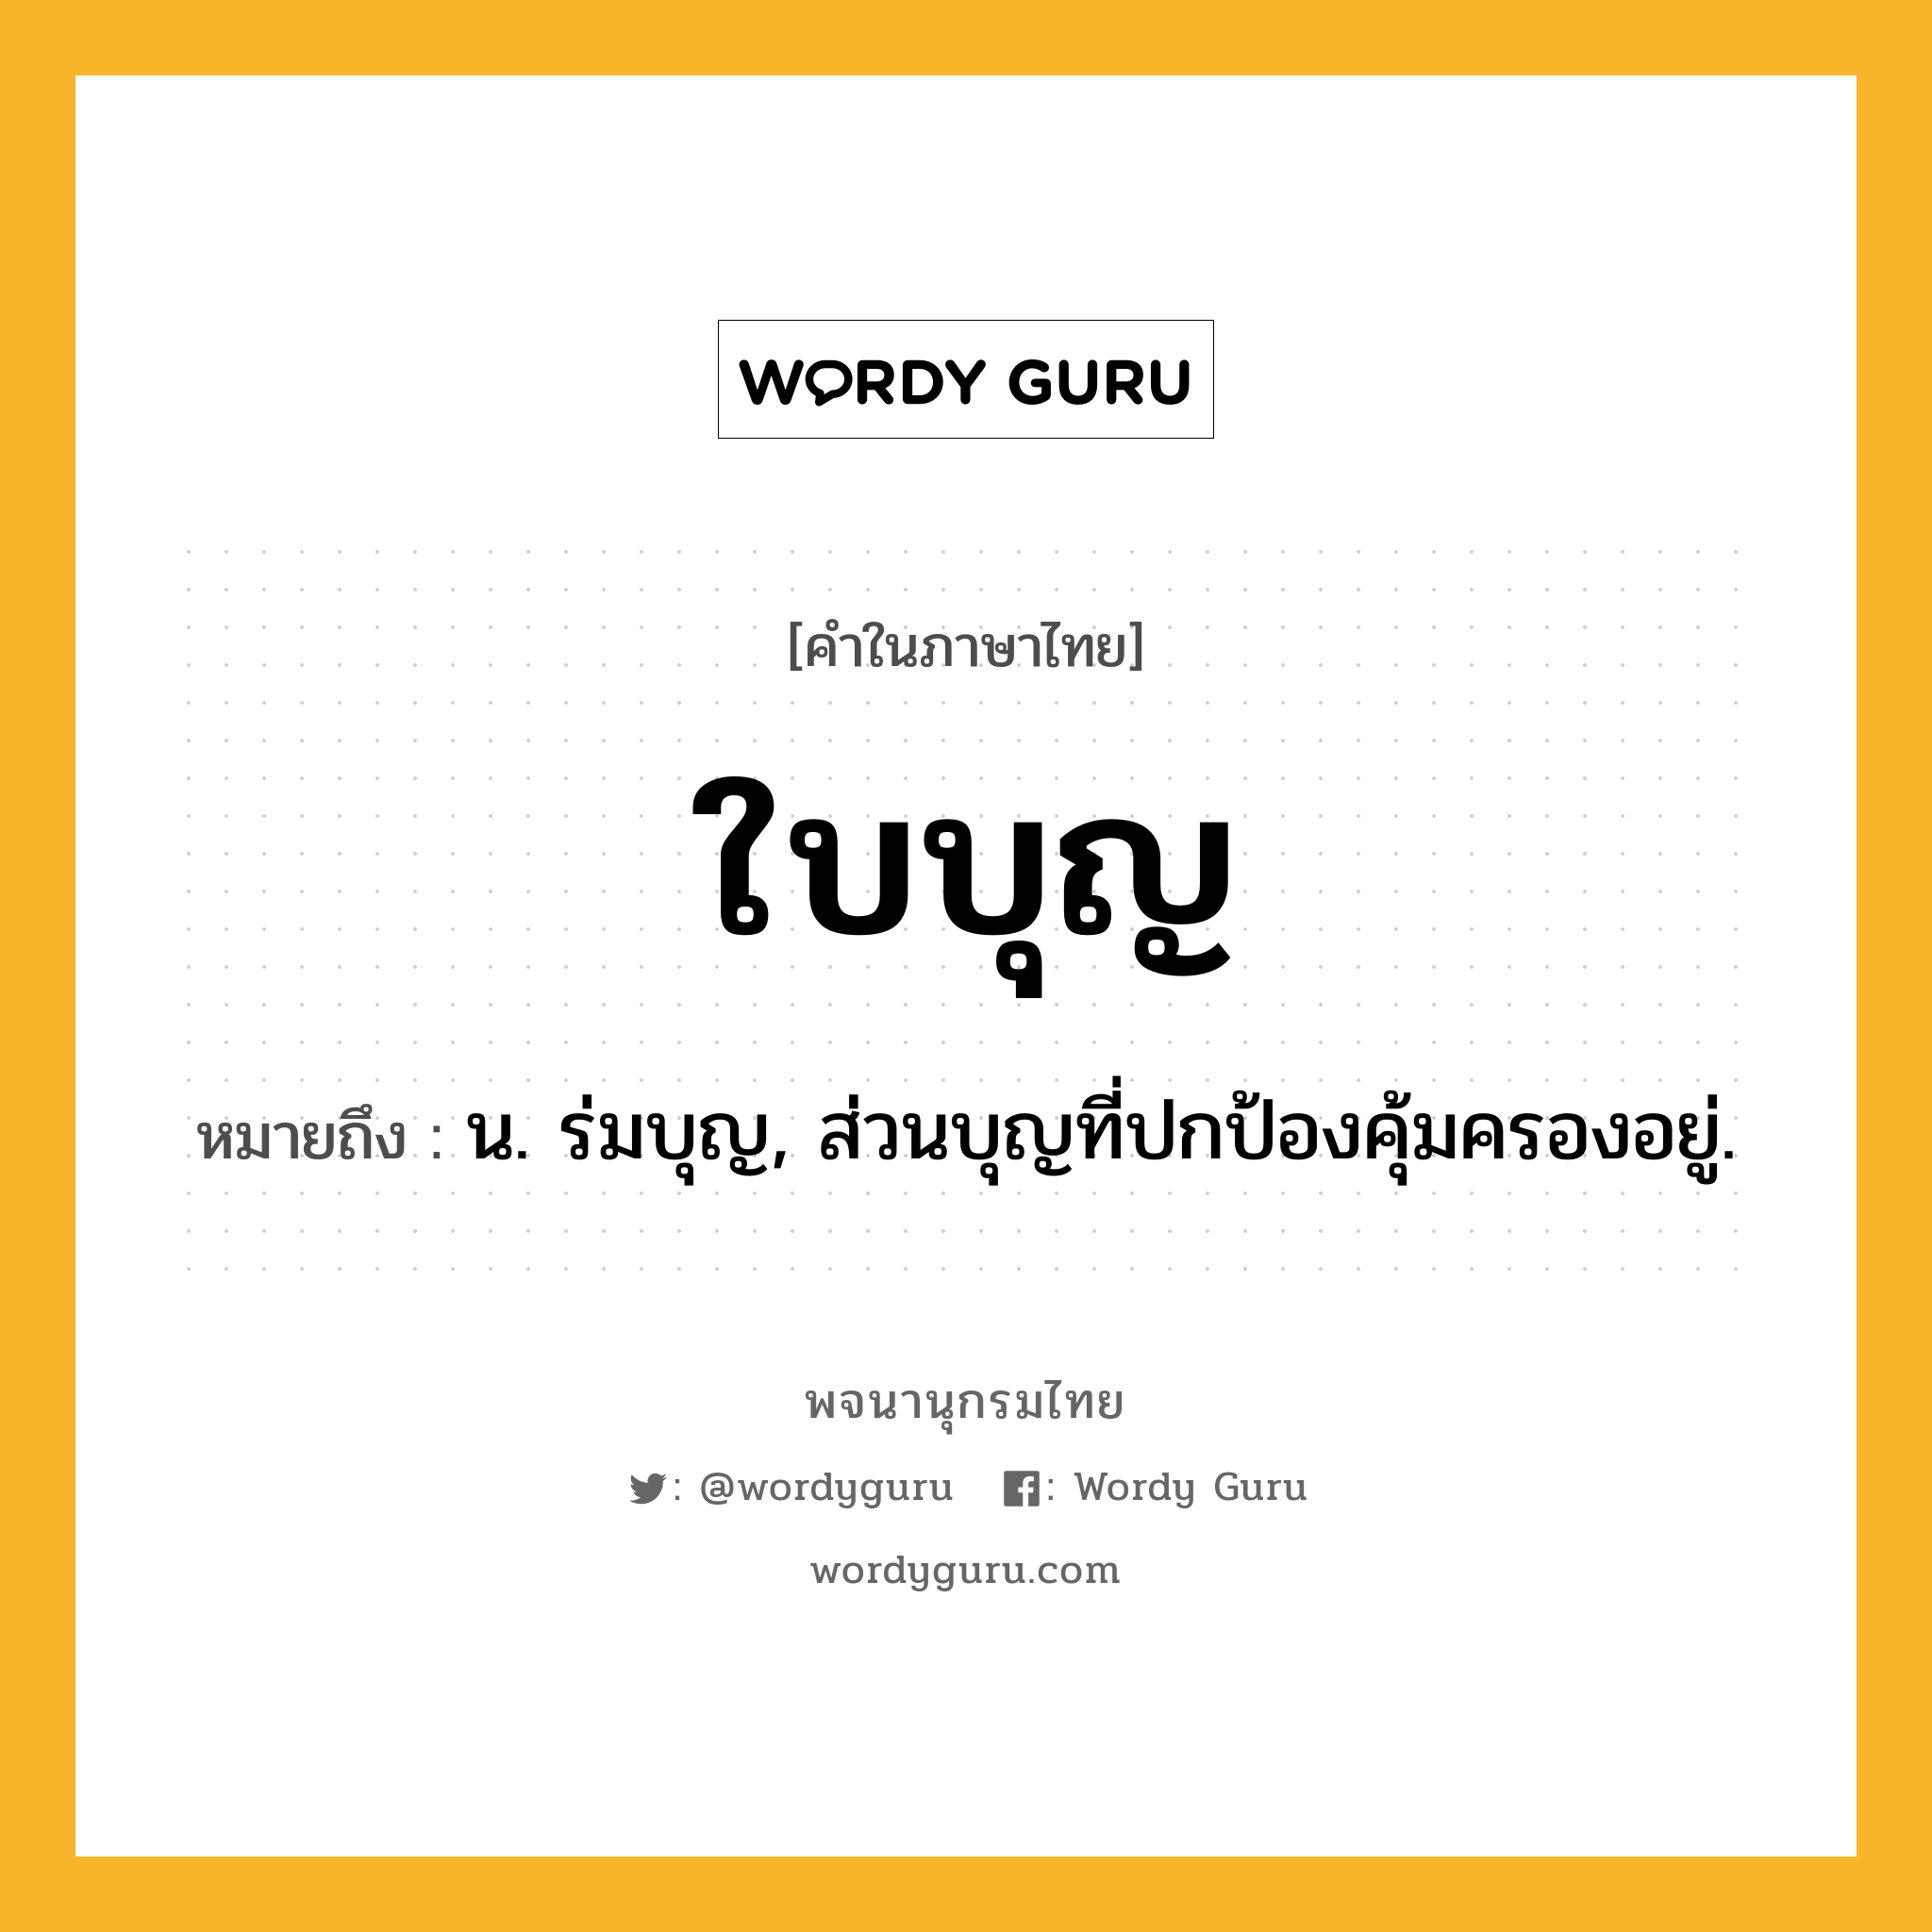 ใบบุญ ความหมาย หมายถึงอะไร?, คำในภาษาไทย ใบบุญ หมายถึง น. ร่มบุญ, ส่วนบุญที่ปกป้องคุ้มครองอยู่.